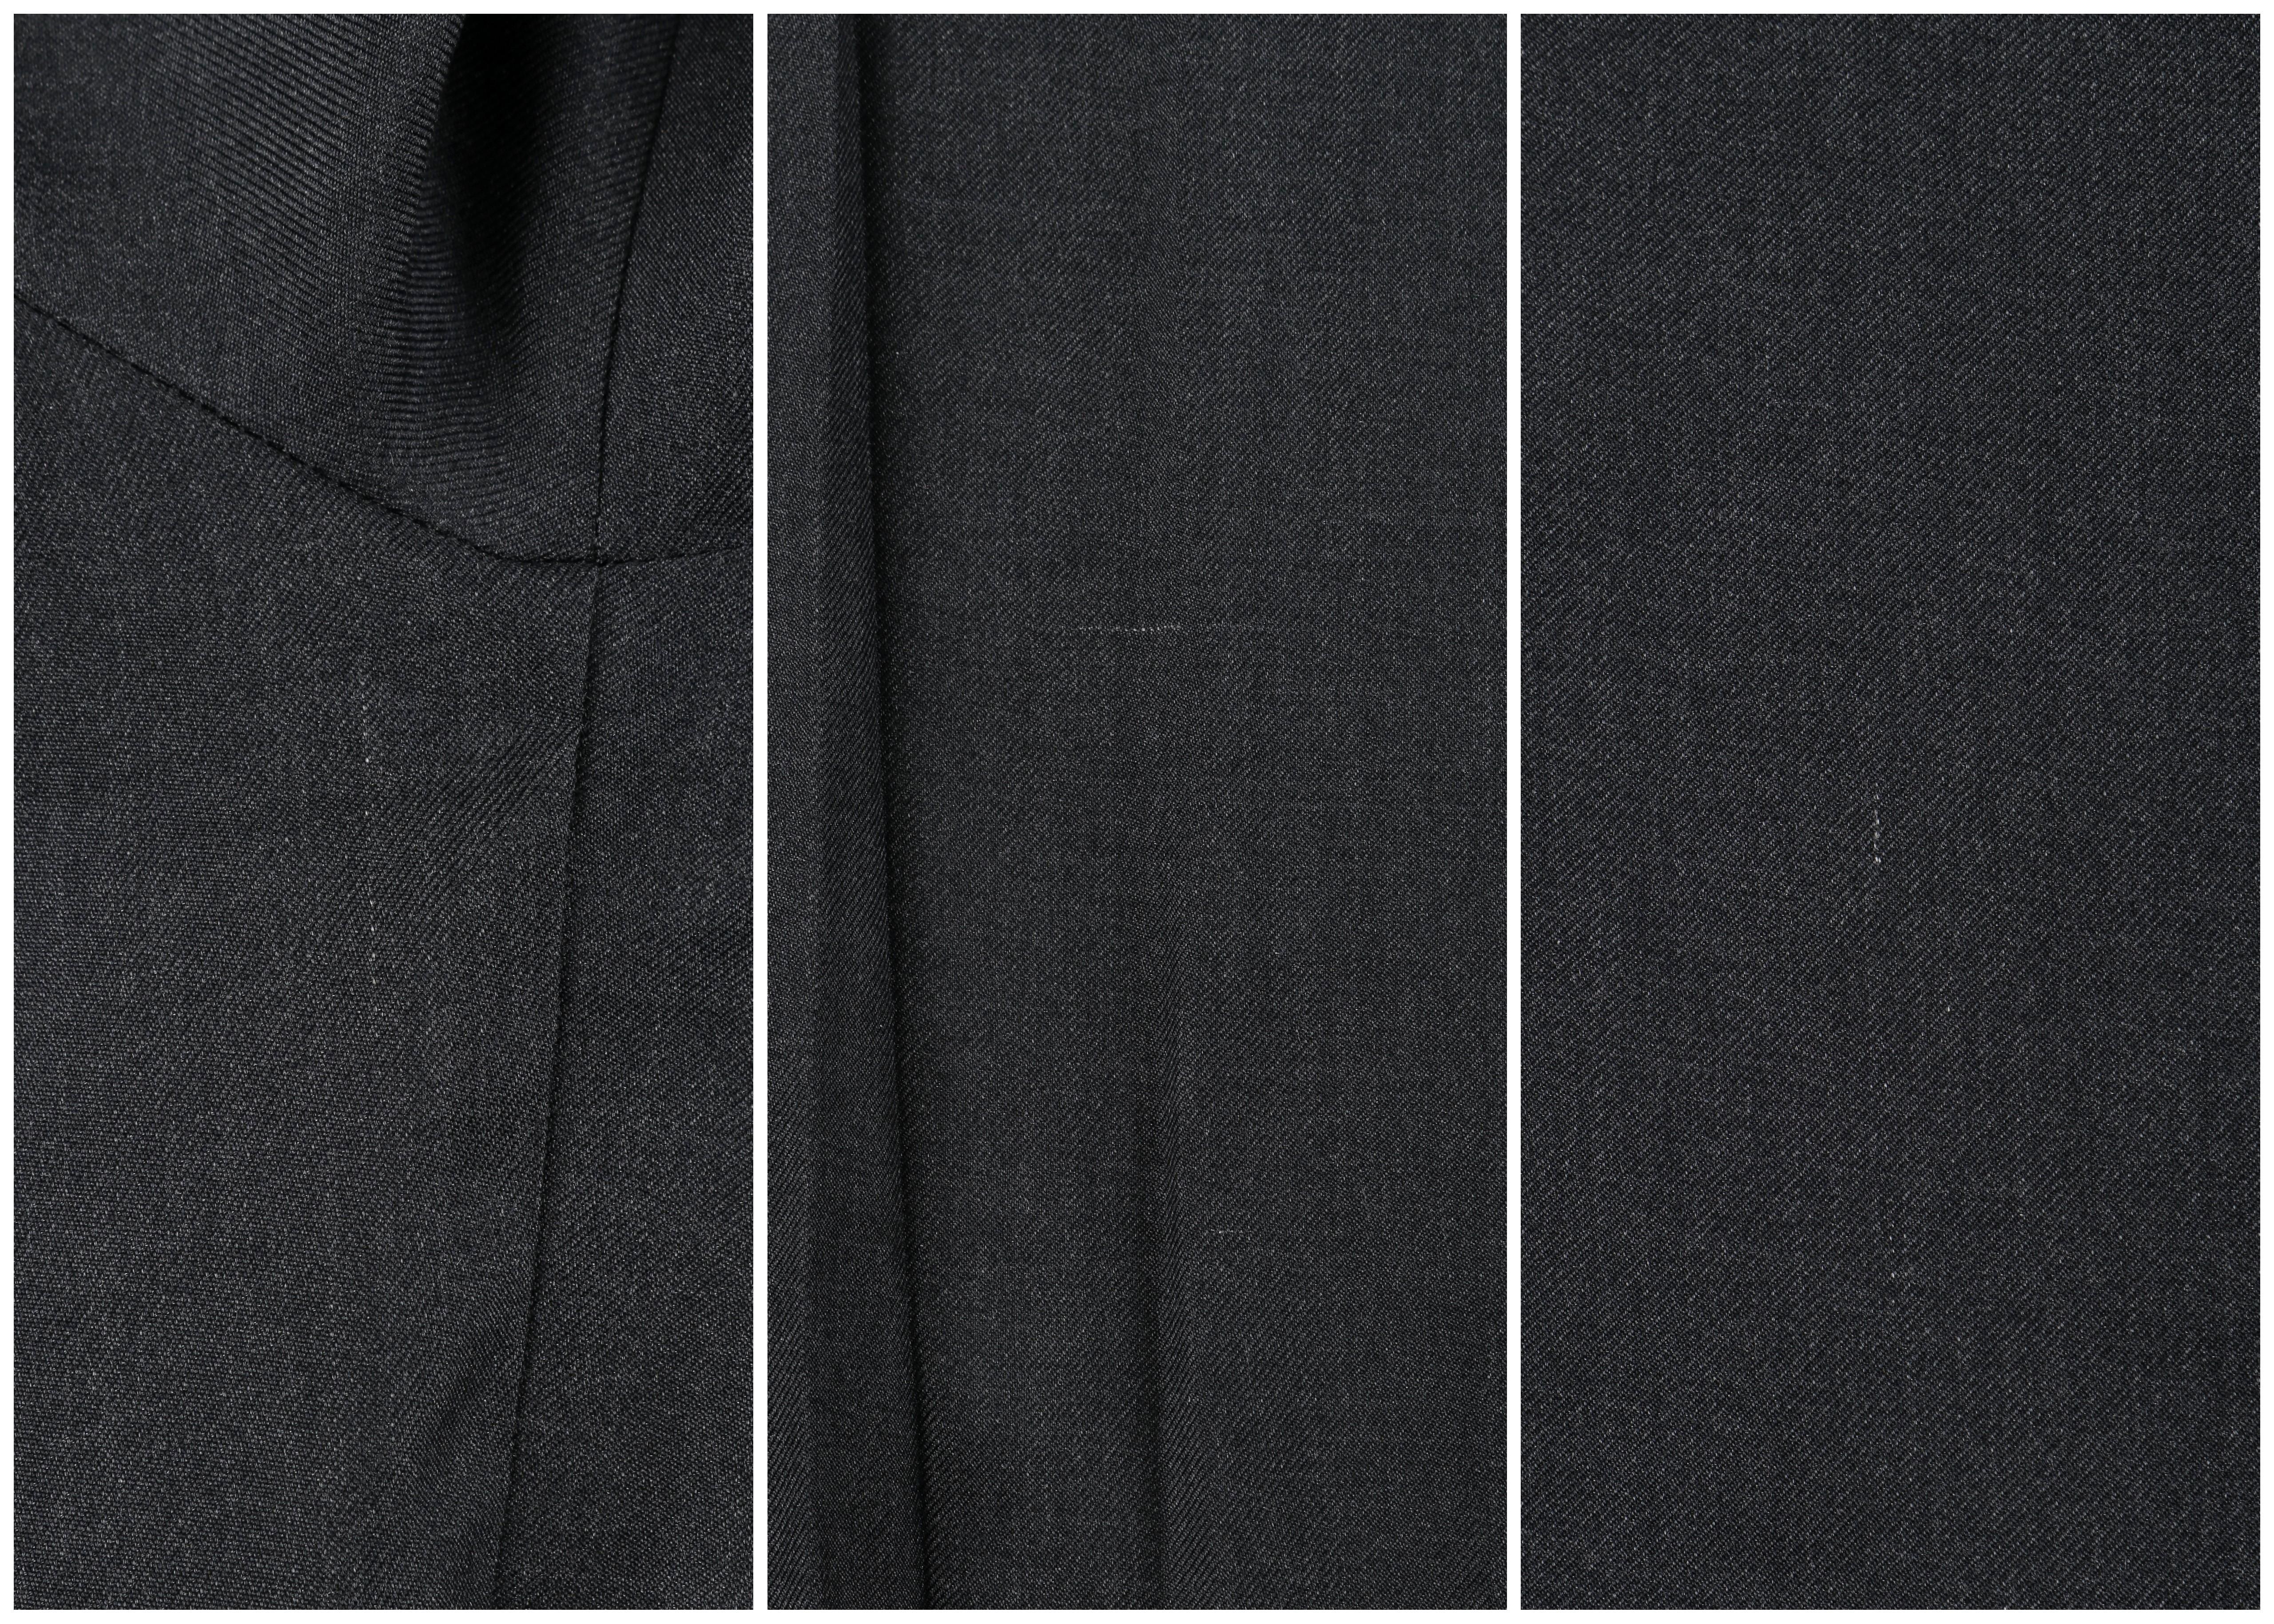  ALEXANDER McQUEEN A/W 1999 “The Overlook” Dark Gray Pleated Bishop Sleeve Top For Sale 4